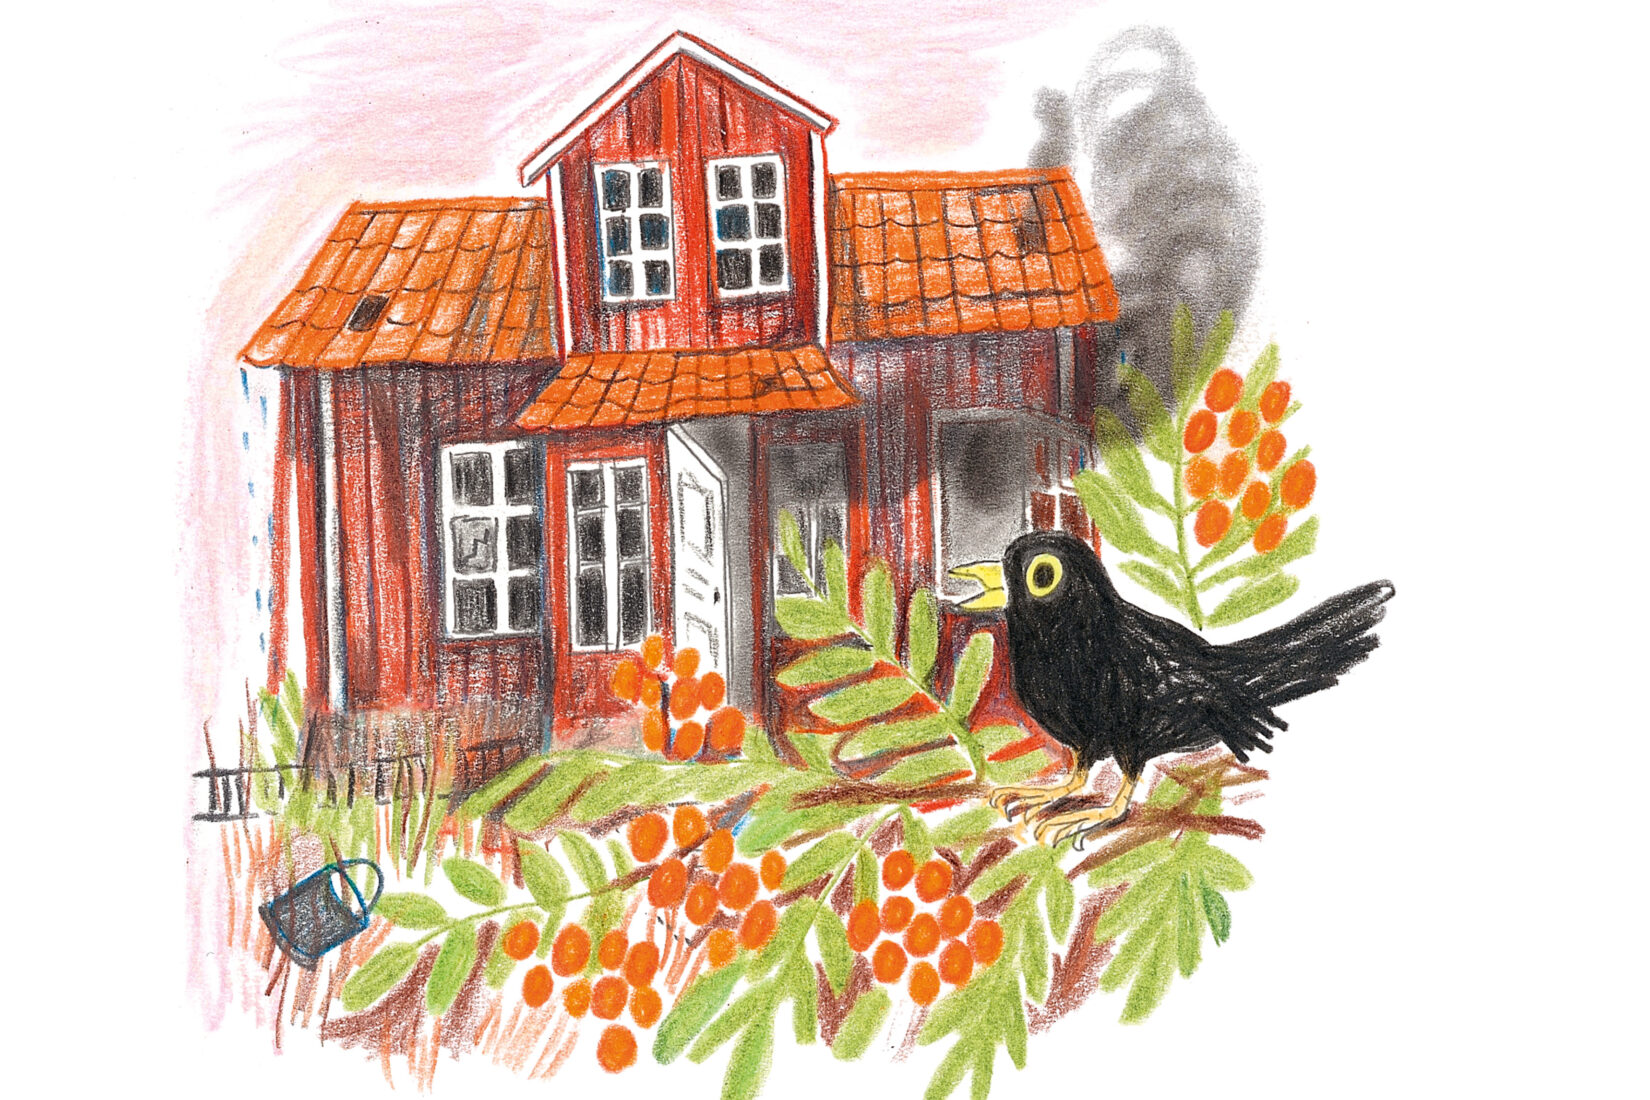 Dessin d'une maison en bois peinte en rouge au milieu de la forêt, avec un oiseau noir posé sur une branche au premier plan.